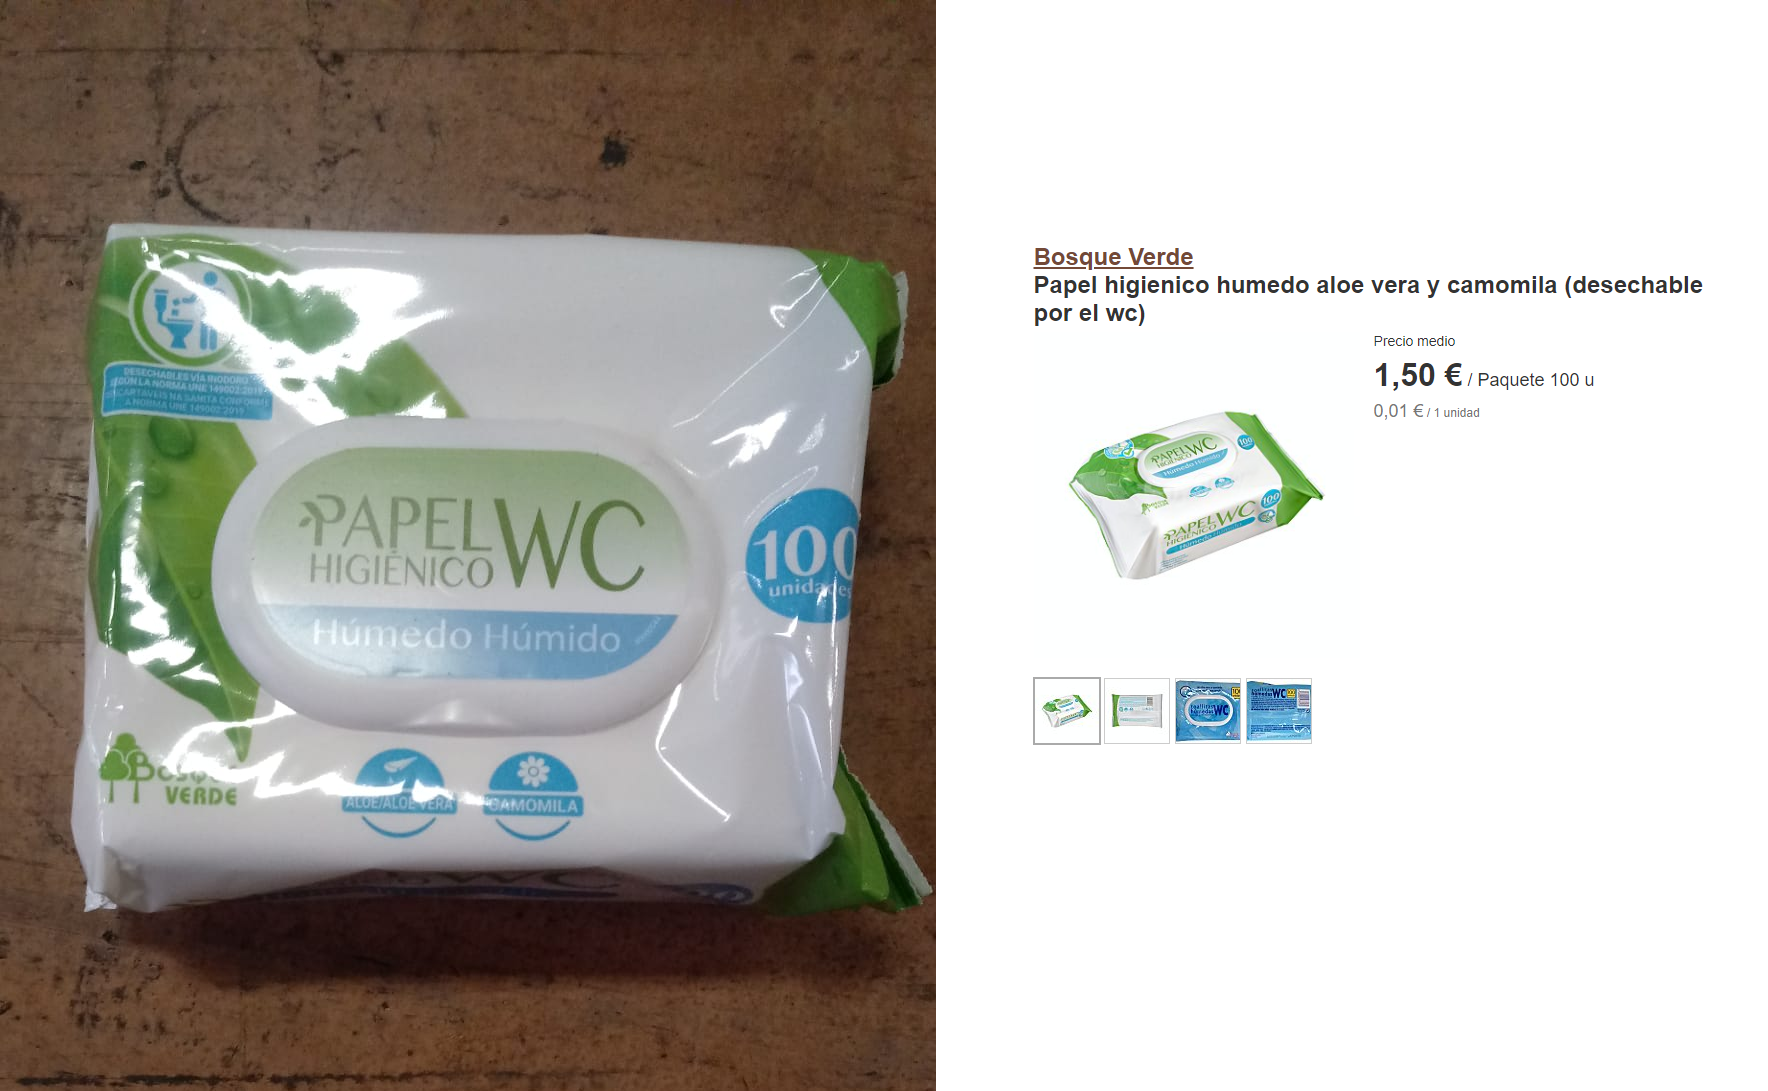 Bosque Verde Papel higienico humedo aloe vera y camomila (desechable por el  wc) Paquete 100 u